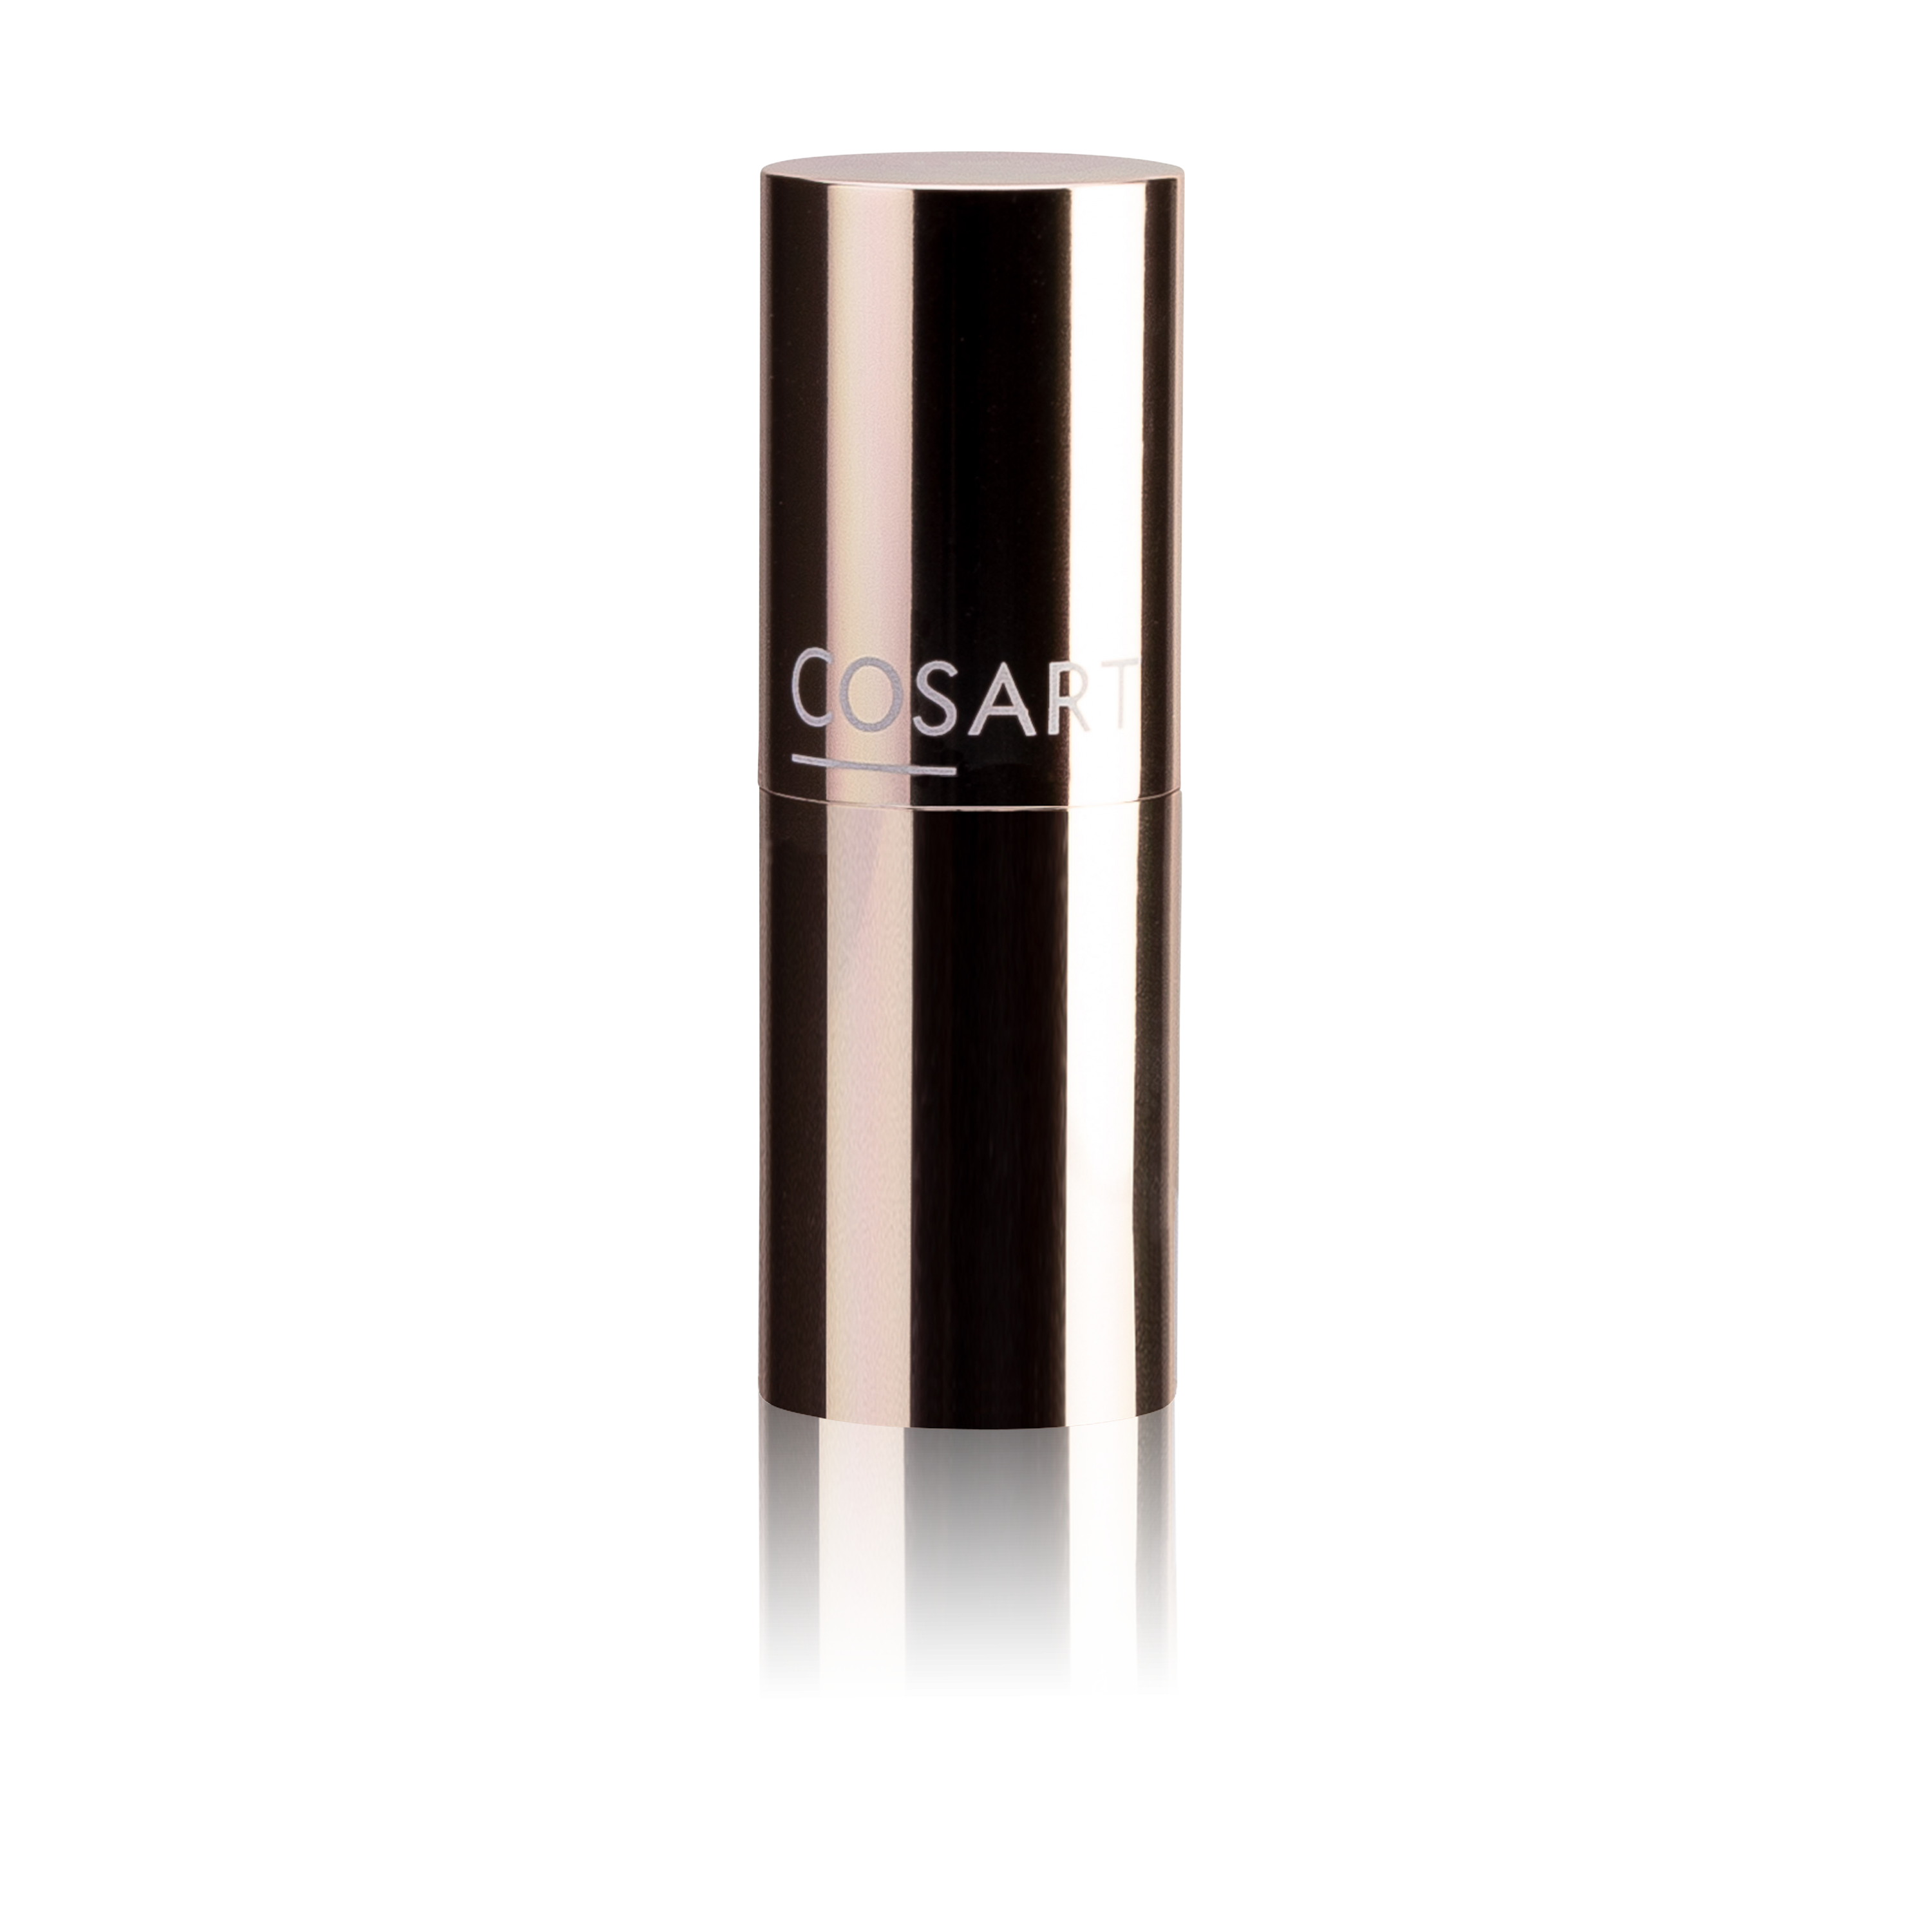 COSART Lipstick Elegance geranie 3020 3,5 g